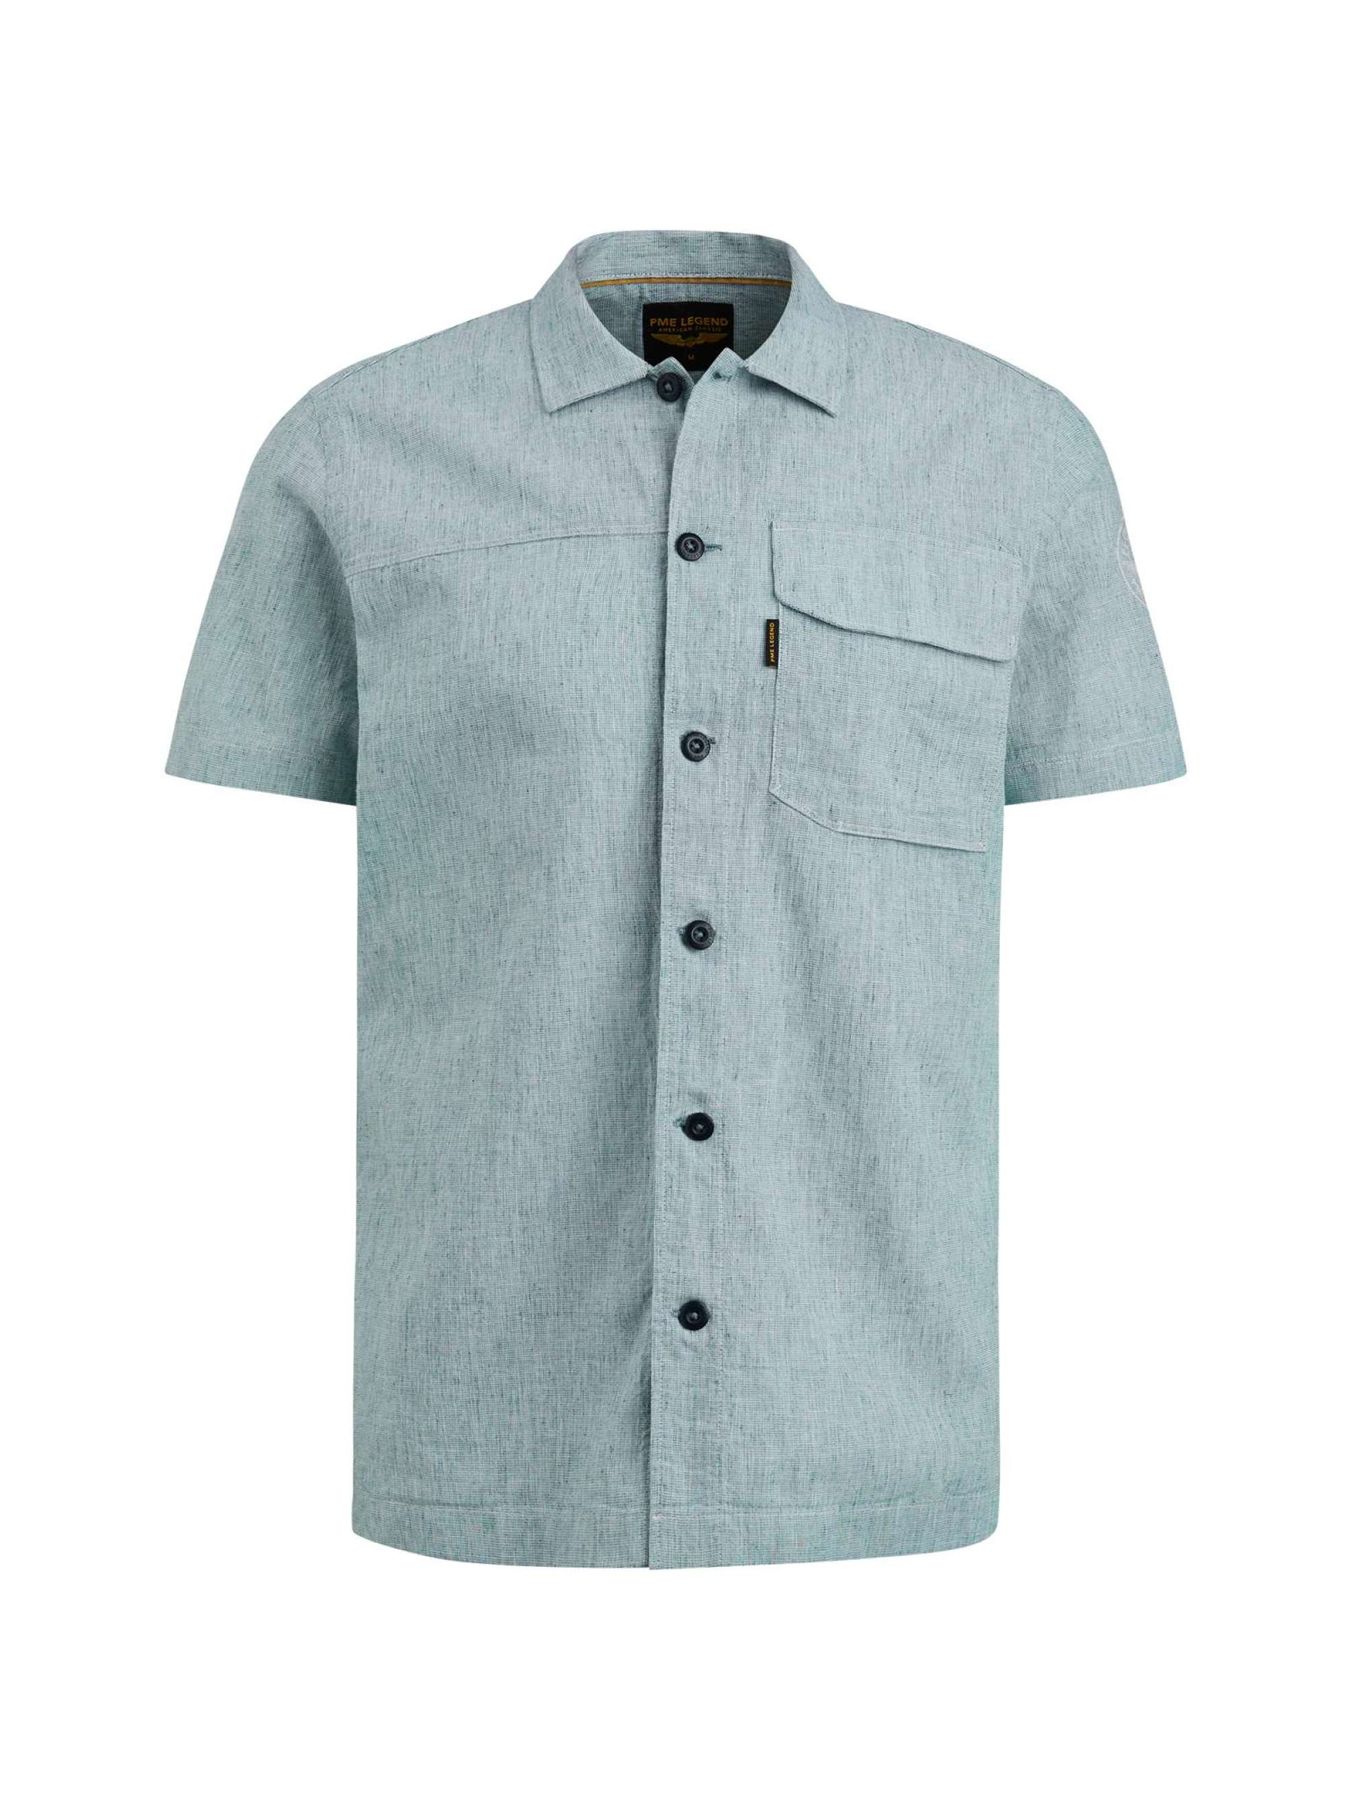 Pme Legend Short Sleeve Shirt Ctn Linen Overs Ink Blue 00104060-5234